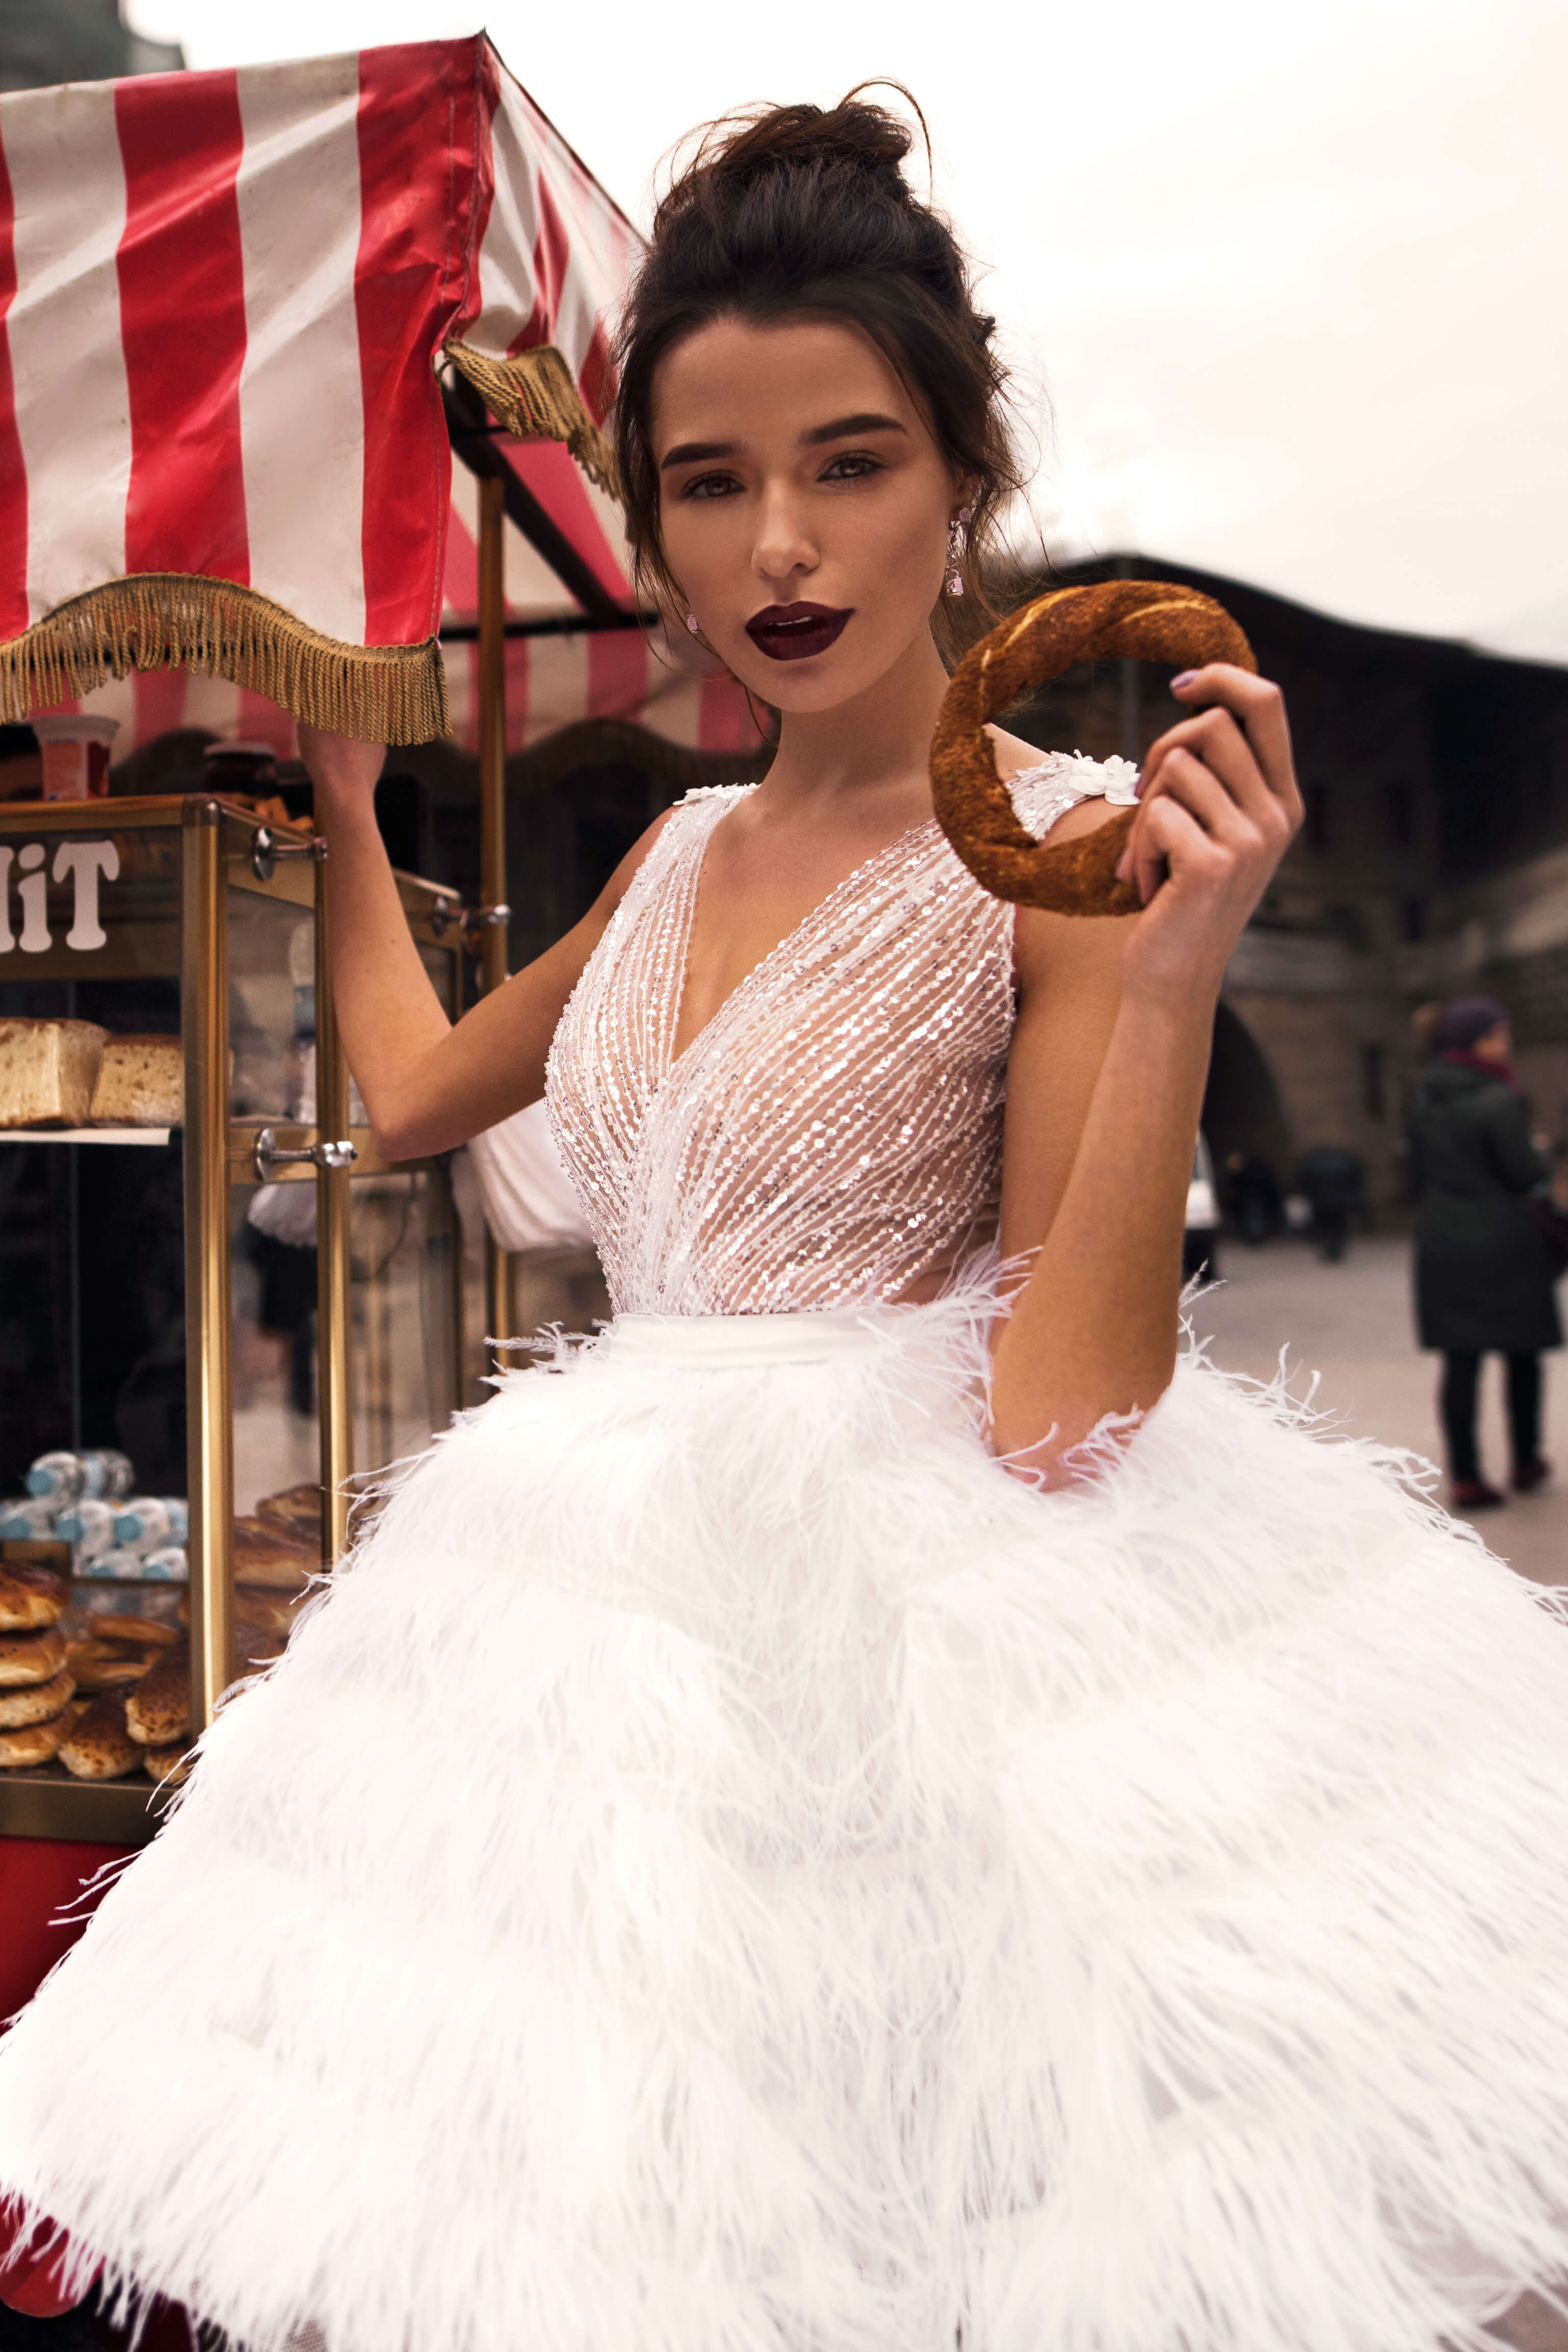 Купить свадебное платье «Алисия» Бламмо Биамо из коллекции 2018 года в Казани